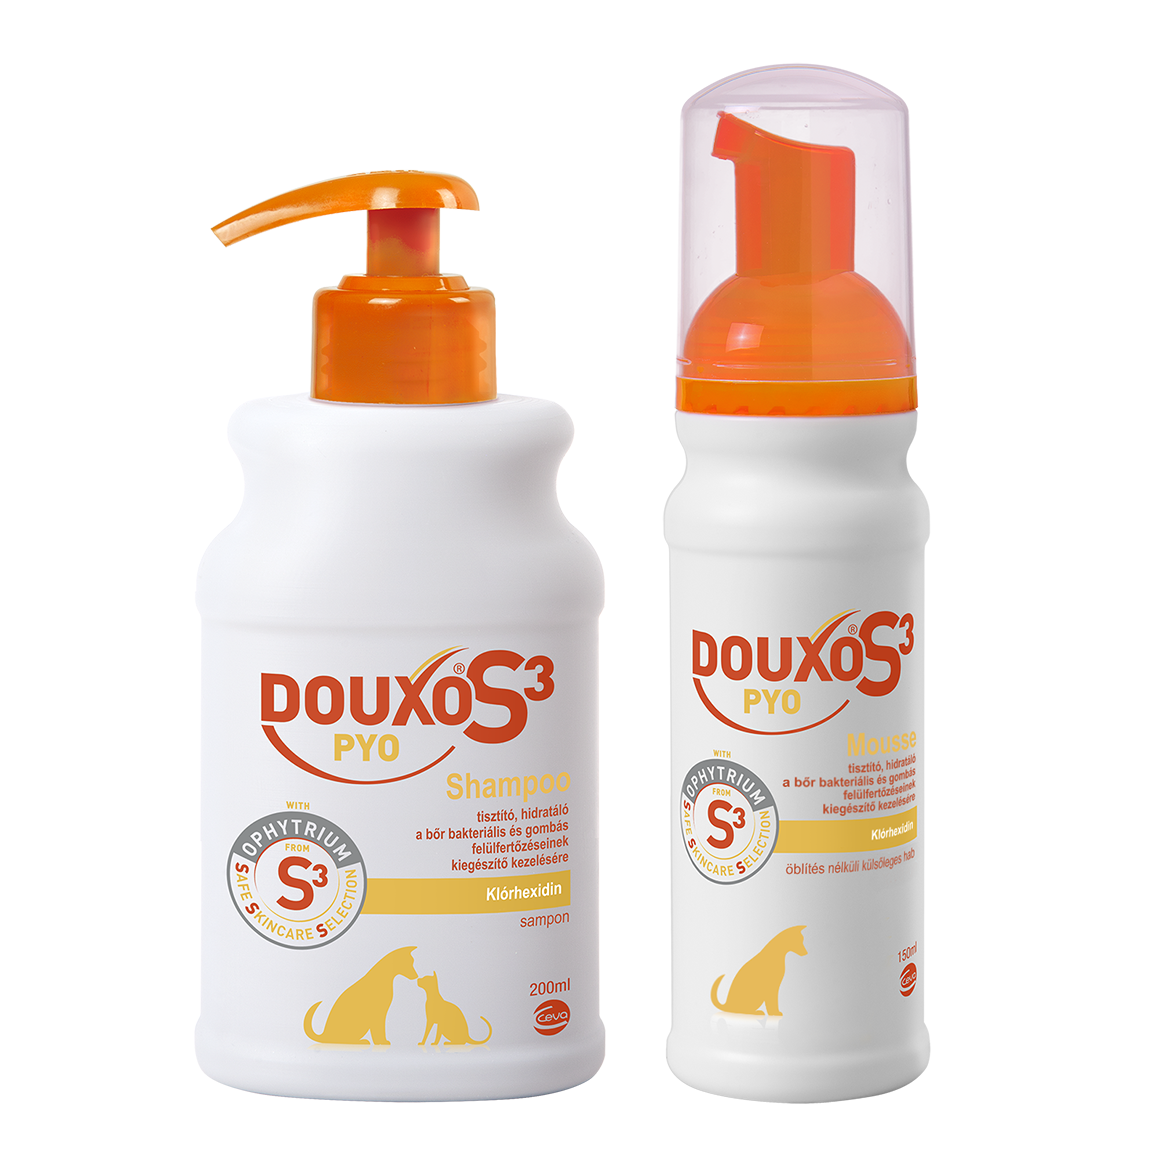 DOUXO S3 Pyo termékcsalád